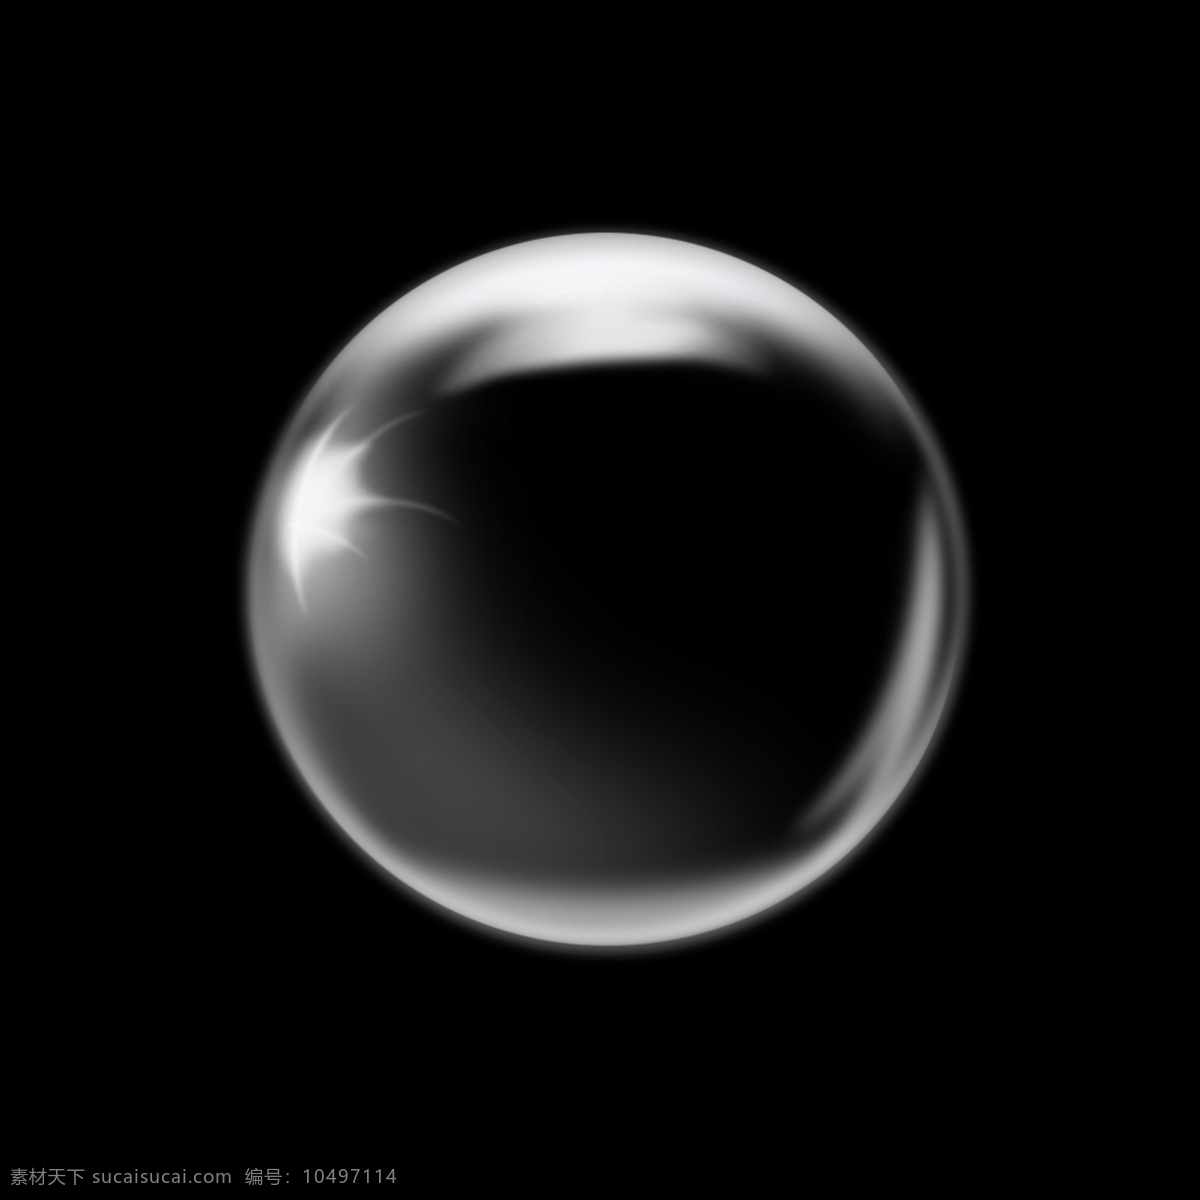 玻璃球 水晶球 透明 立体 平面 广告 画册 psd分层 分层